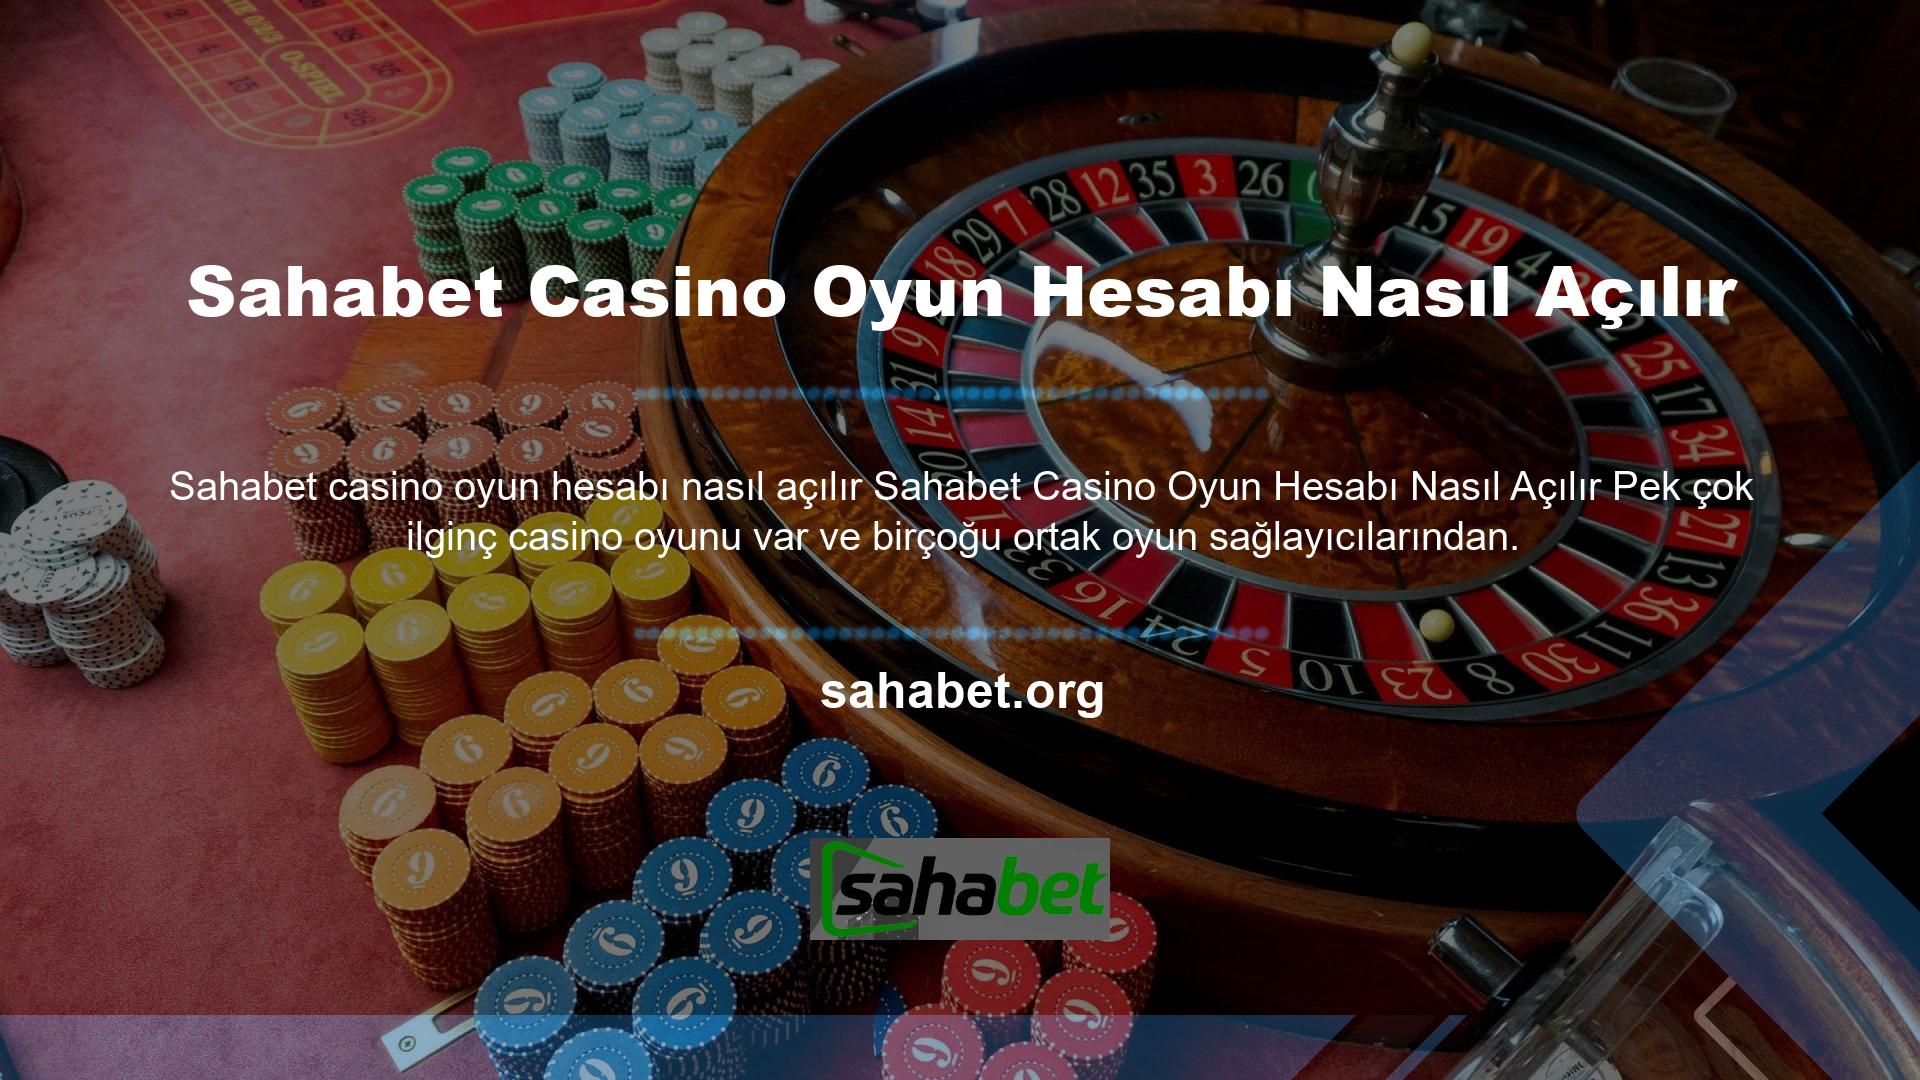 Benzer şekilde, Sahabet dünyanın en profesyonel oyun sağlayıcılarıyla olan ortaklıkları, her açıdan güvenilir bir casino sistemine sahip olmada önemli rol oynamaktadır